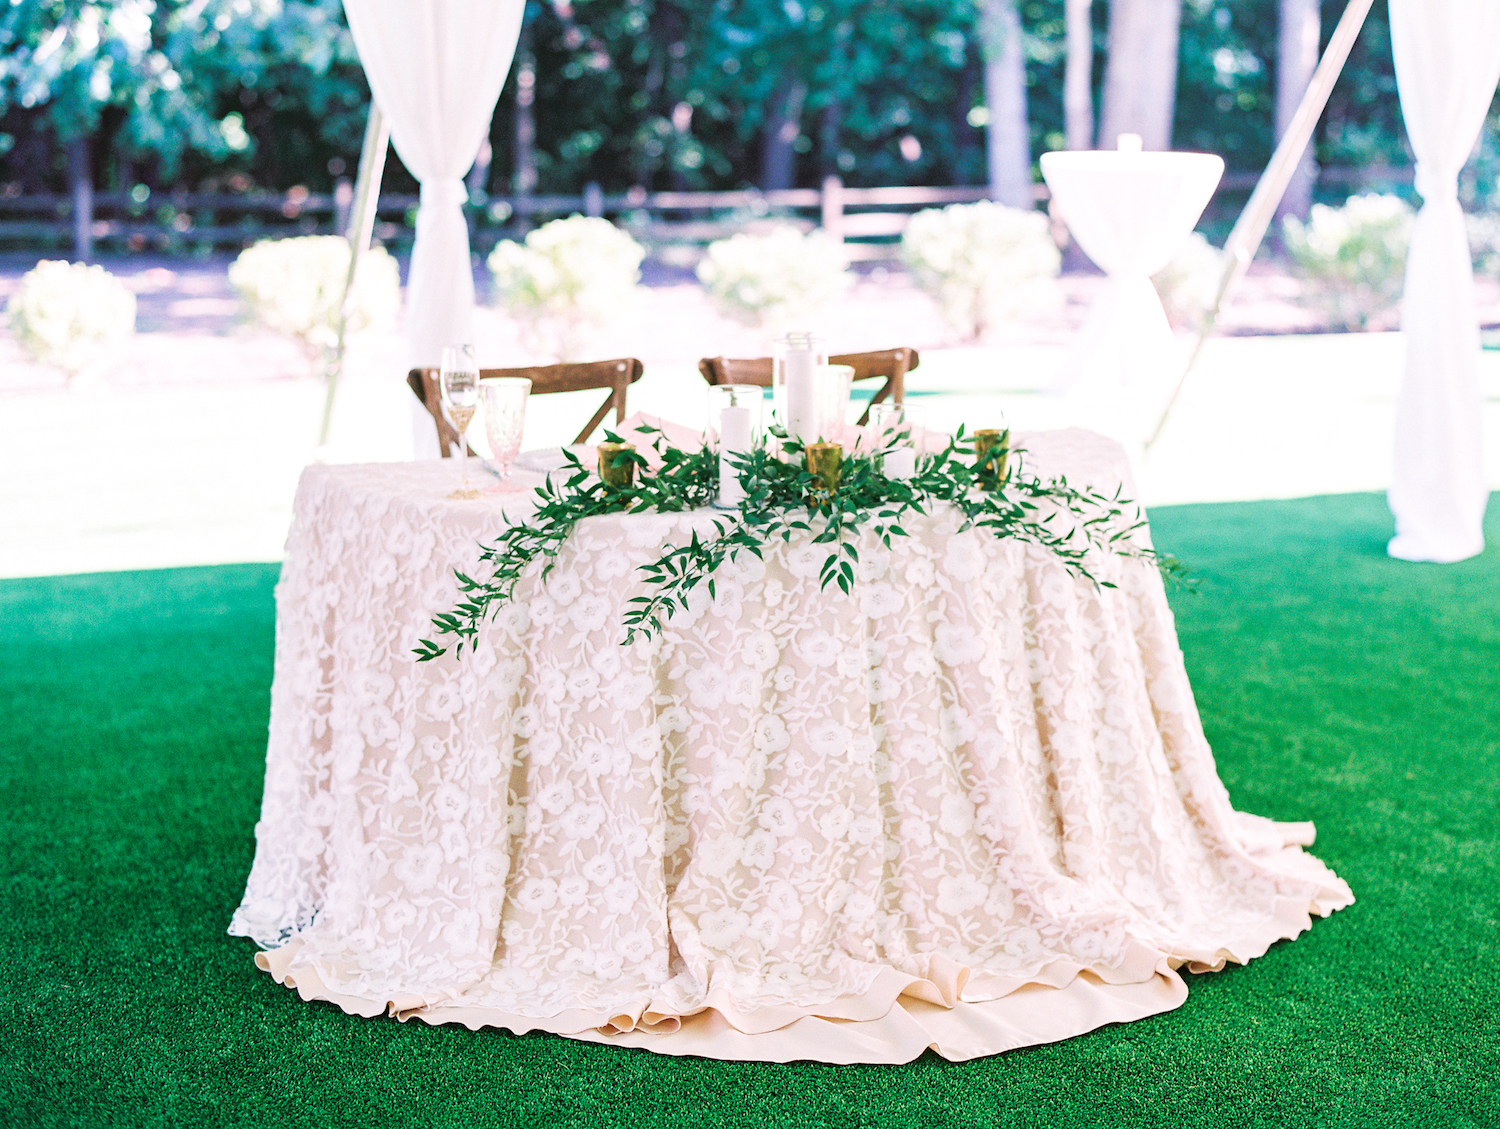 Sweetheart table setup for Apple Blossom resort wedding